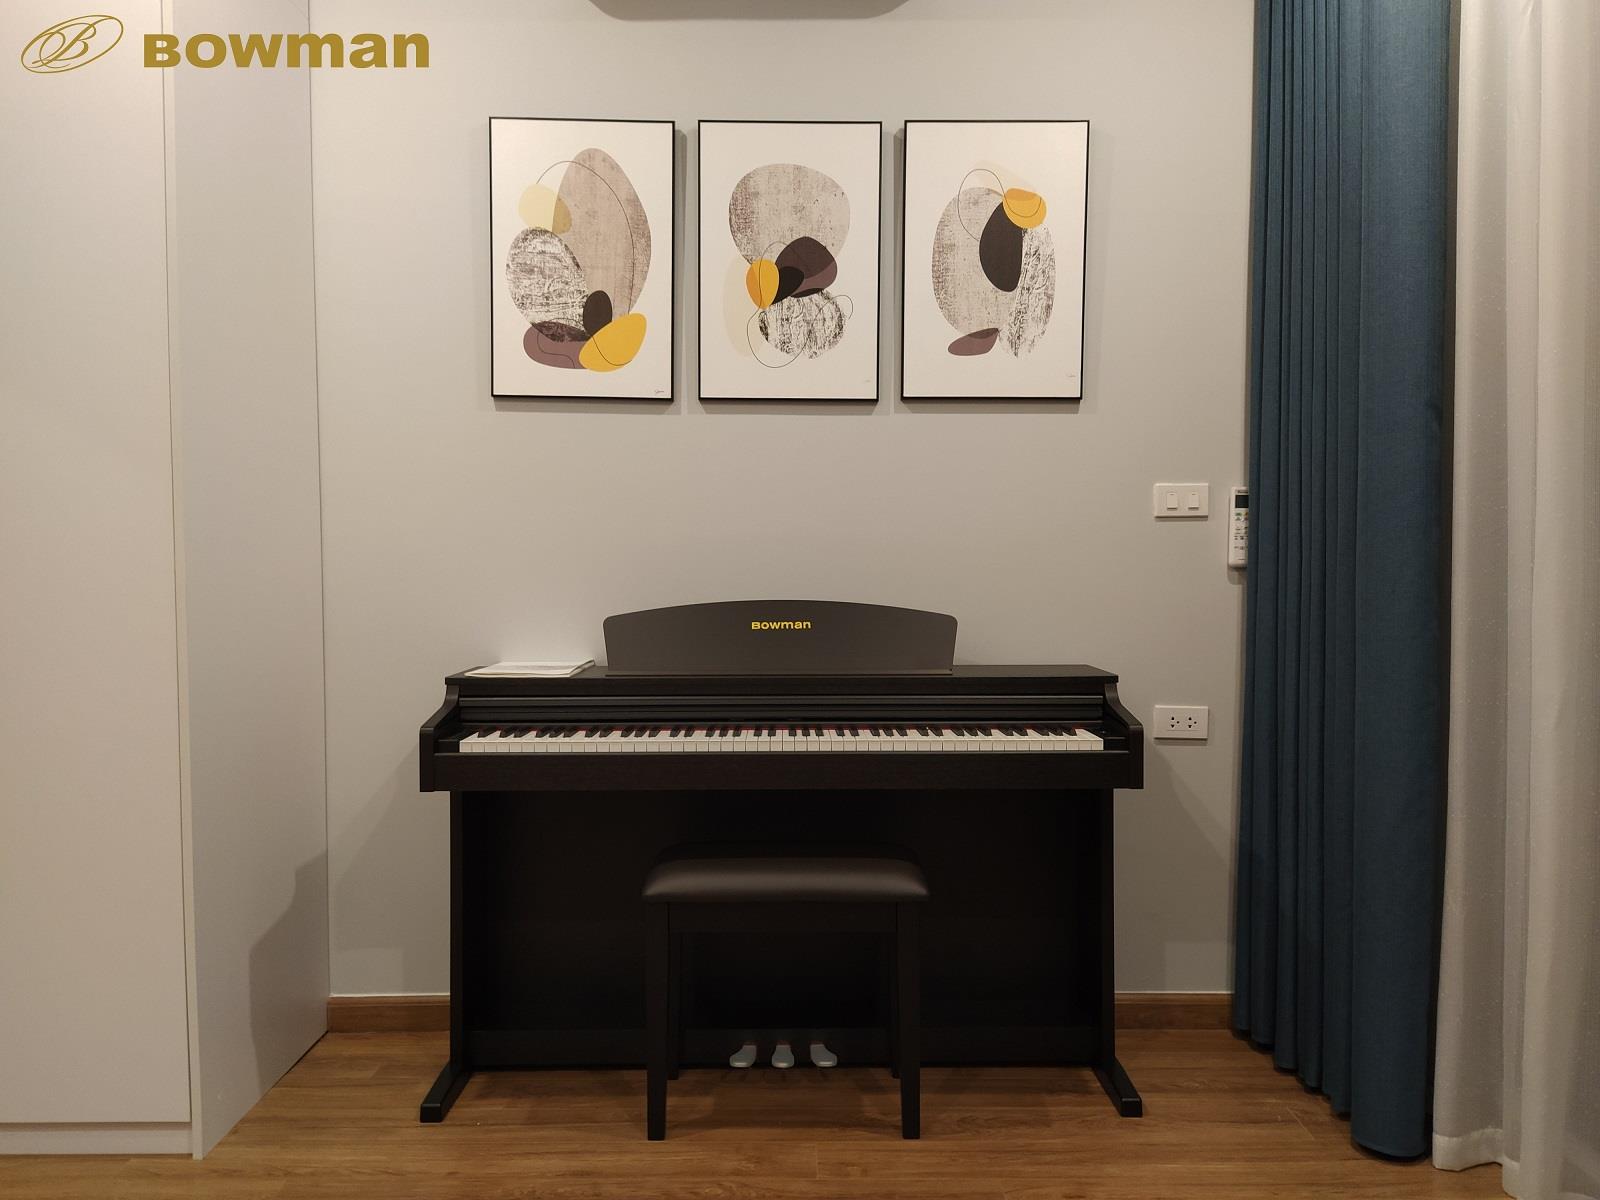 Đàn piano Bowman thiết kế tinh tế, hiện đại - Tiếng Việt - BowmanPIANO.com.vn